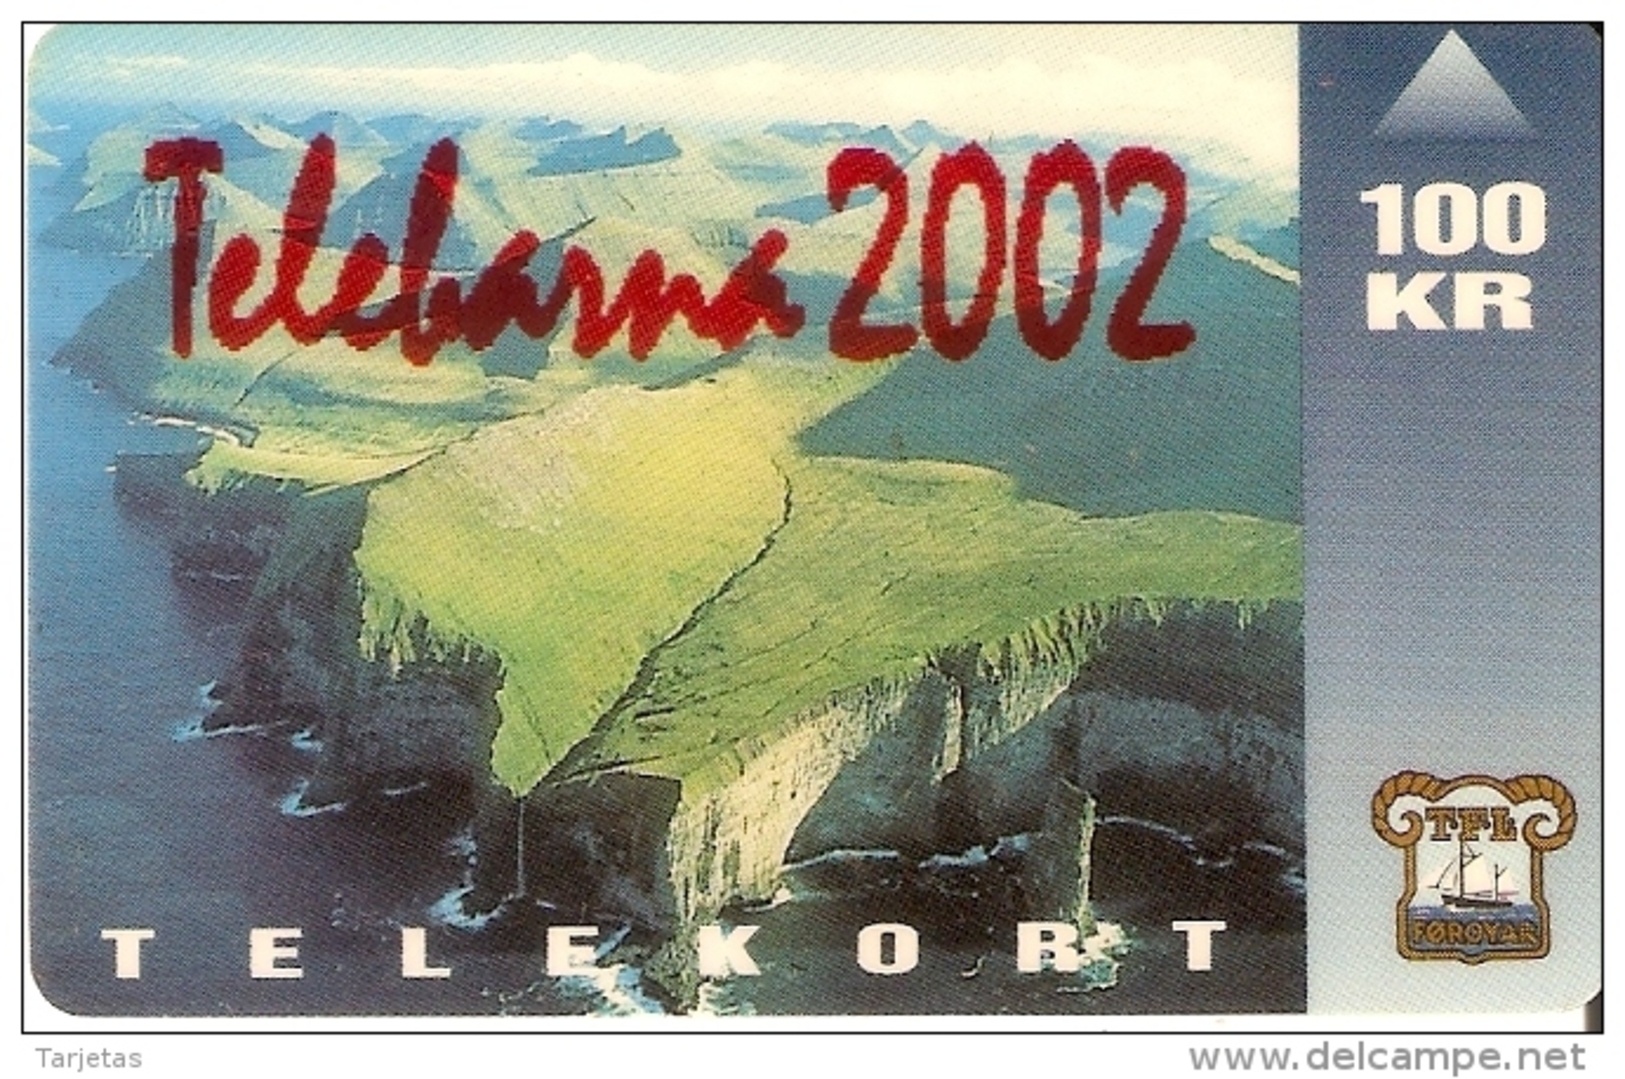 TARJETA DE LAS ISLAS FAROE DE 100 KR DE UN PAISAJE (TELEBARNA 2002) - Isole Faroe